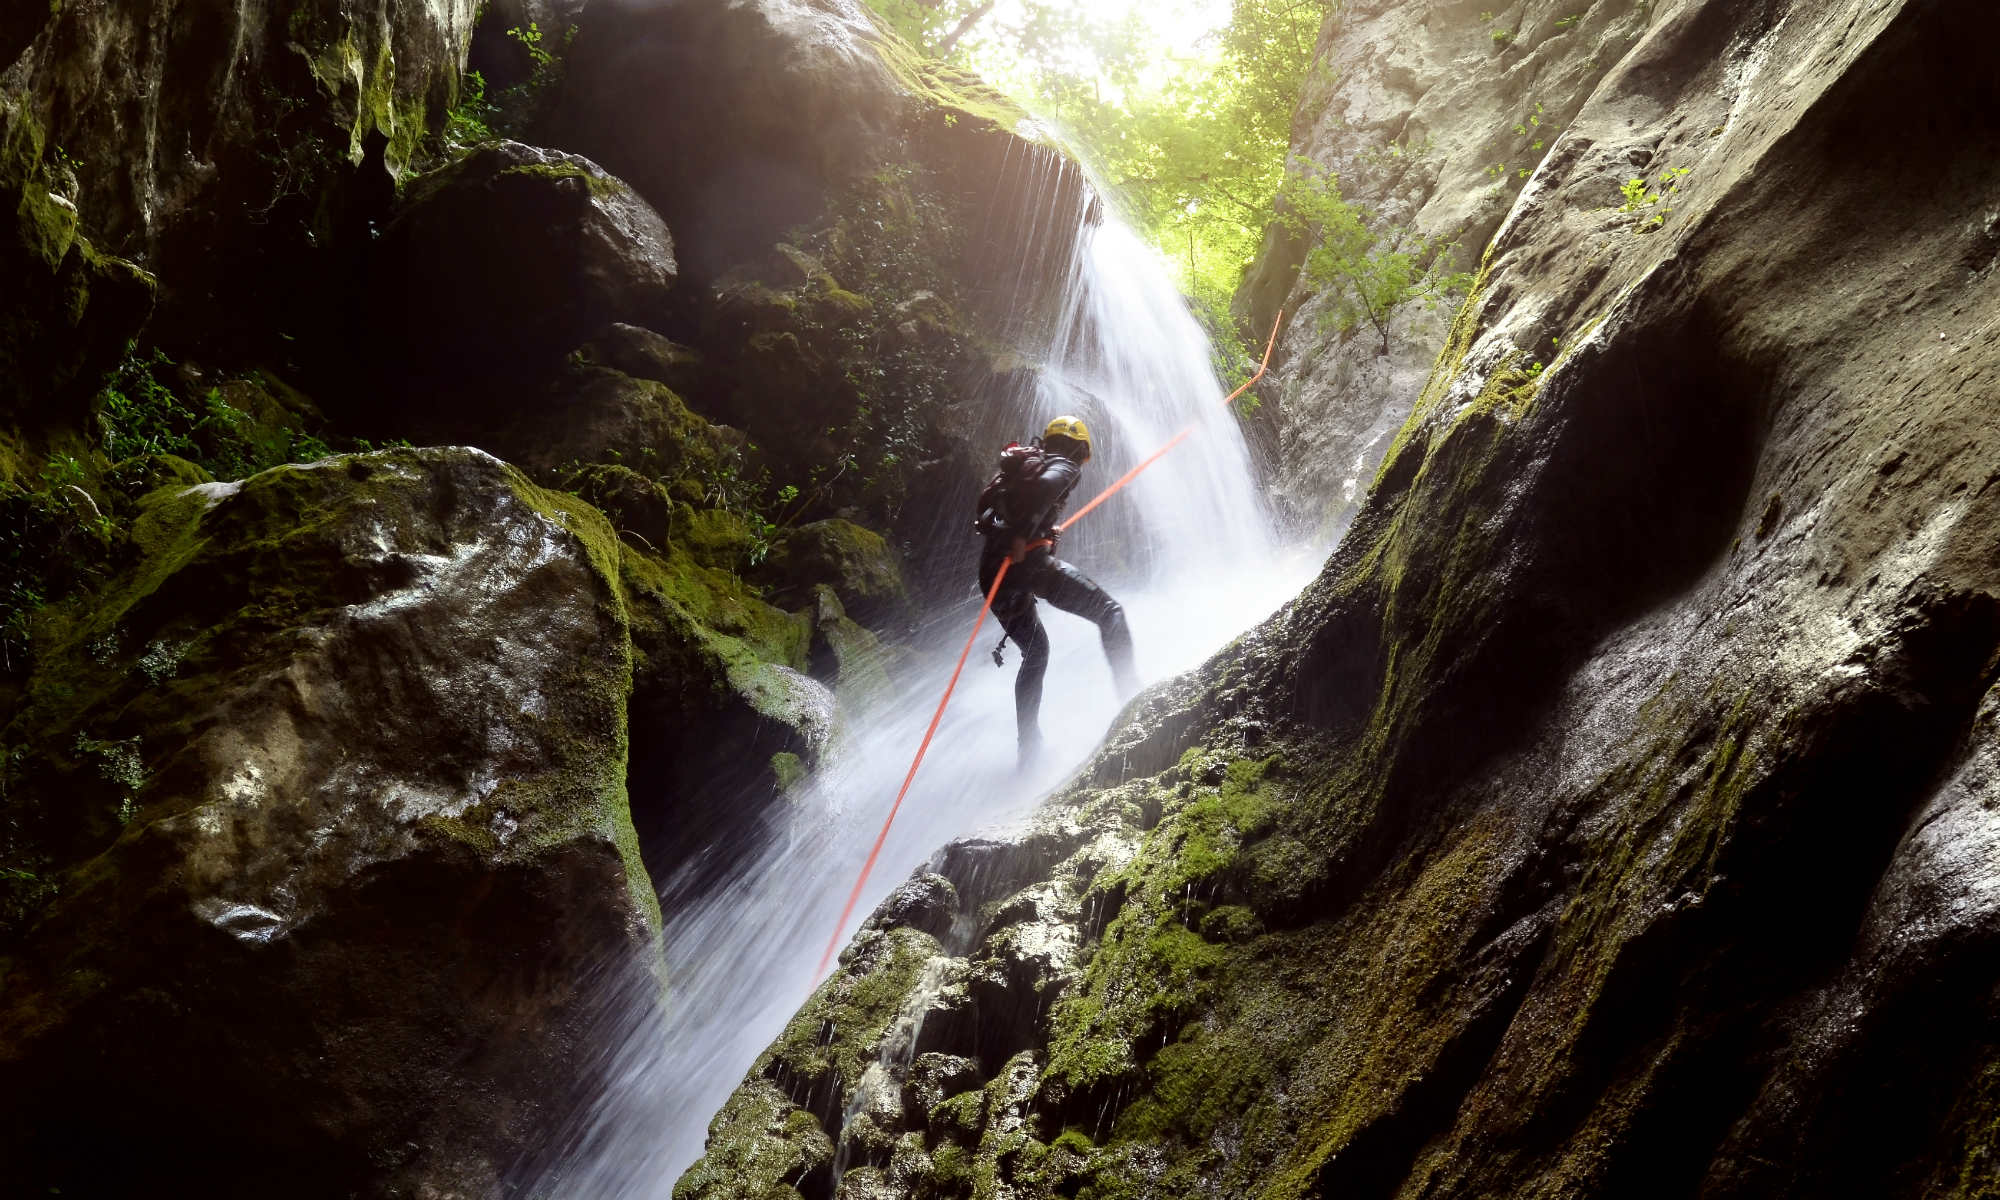 Ein Mann seilt sich beim Canyoning an einem Wasserfall in einer Schlucht ab.